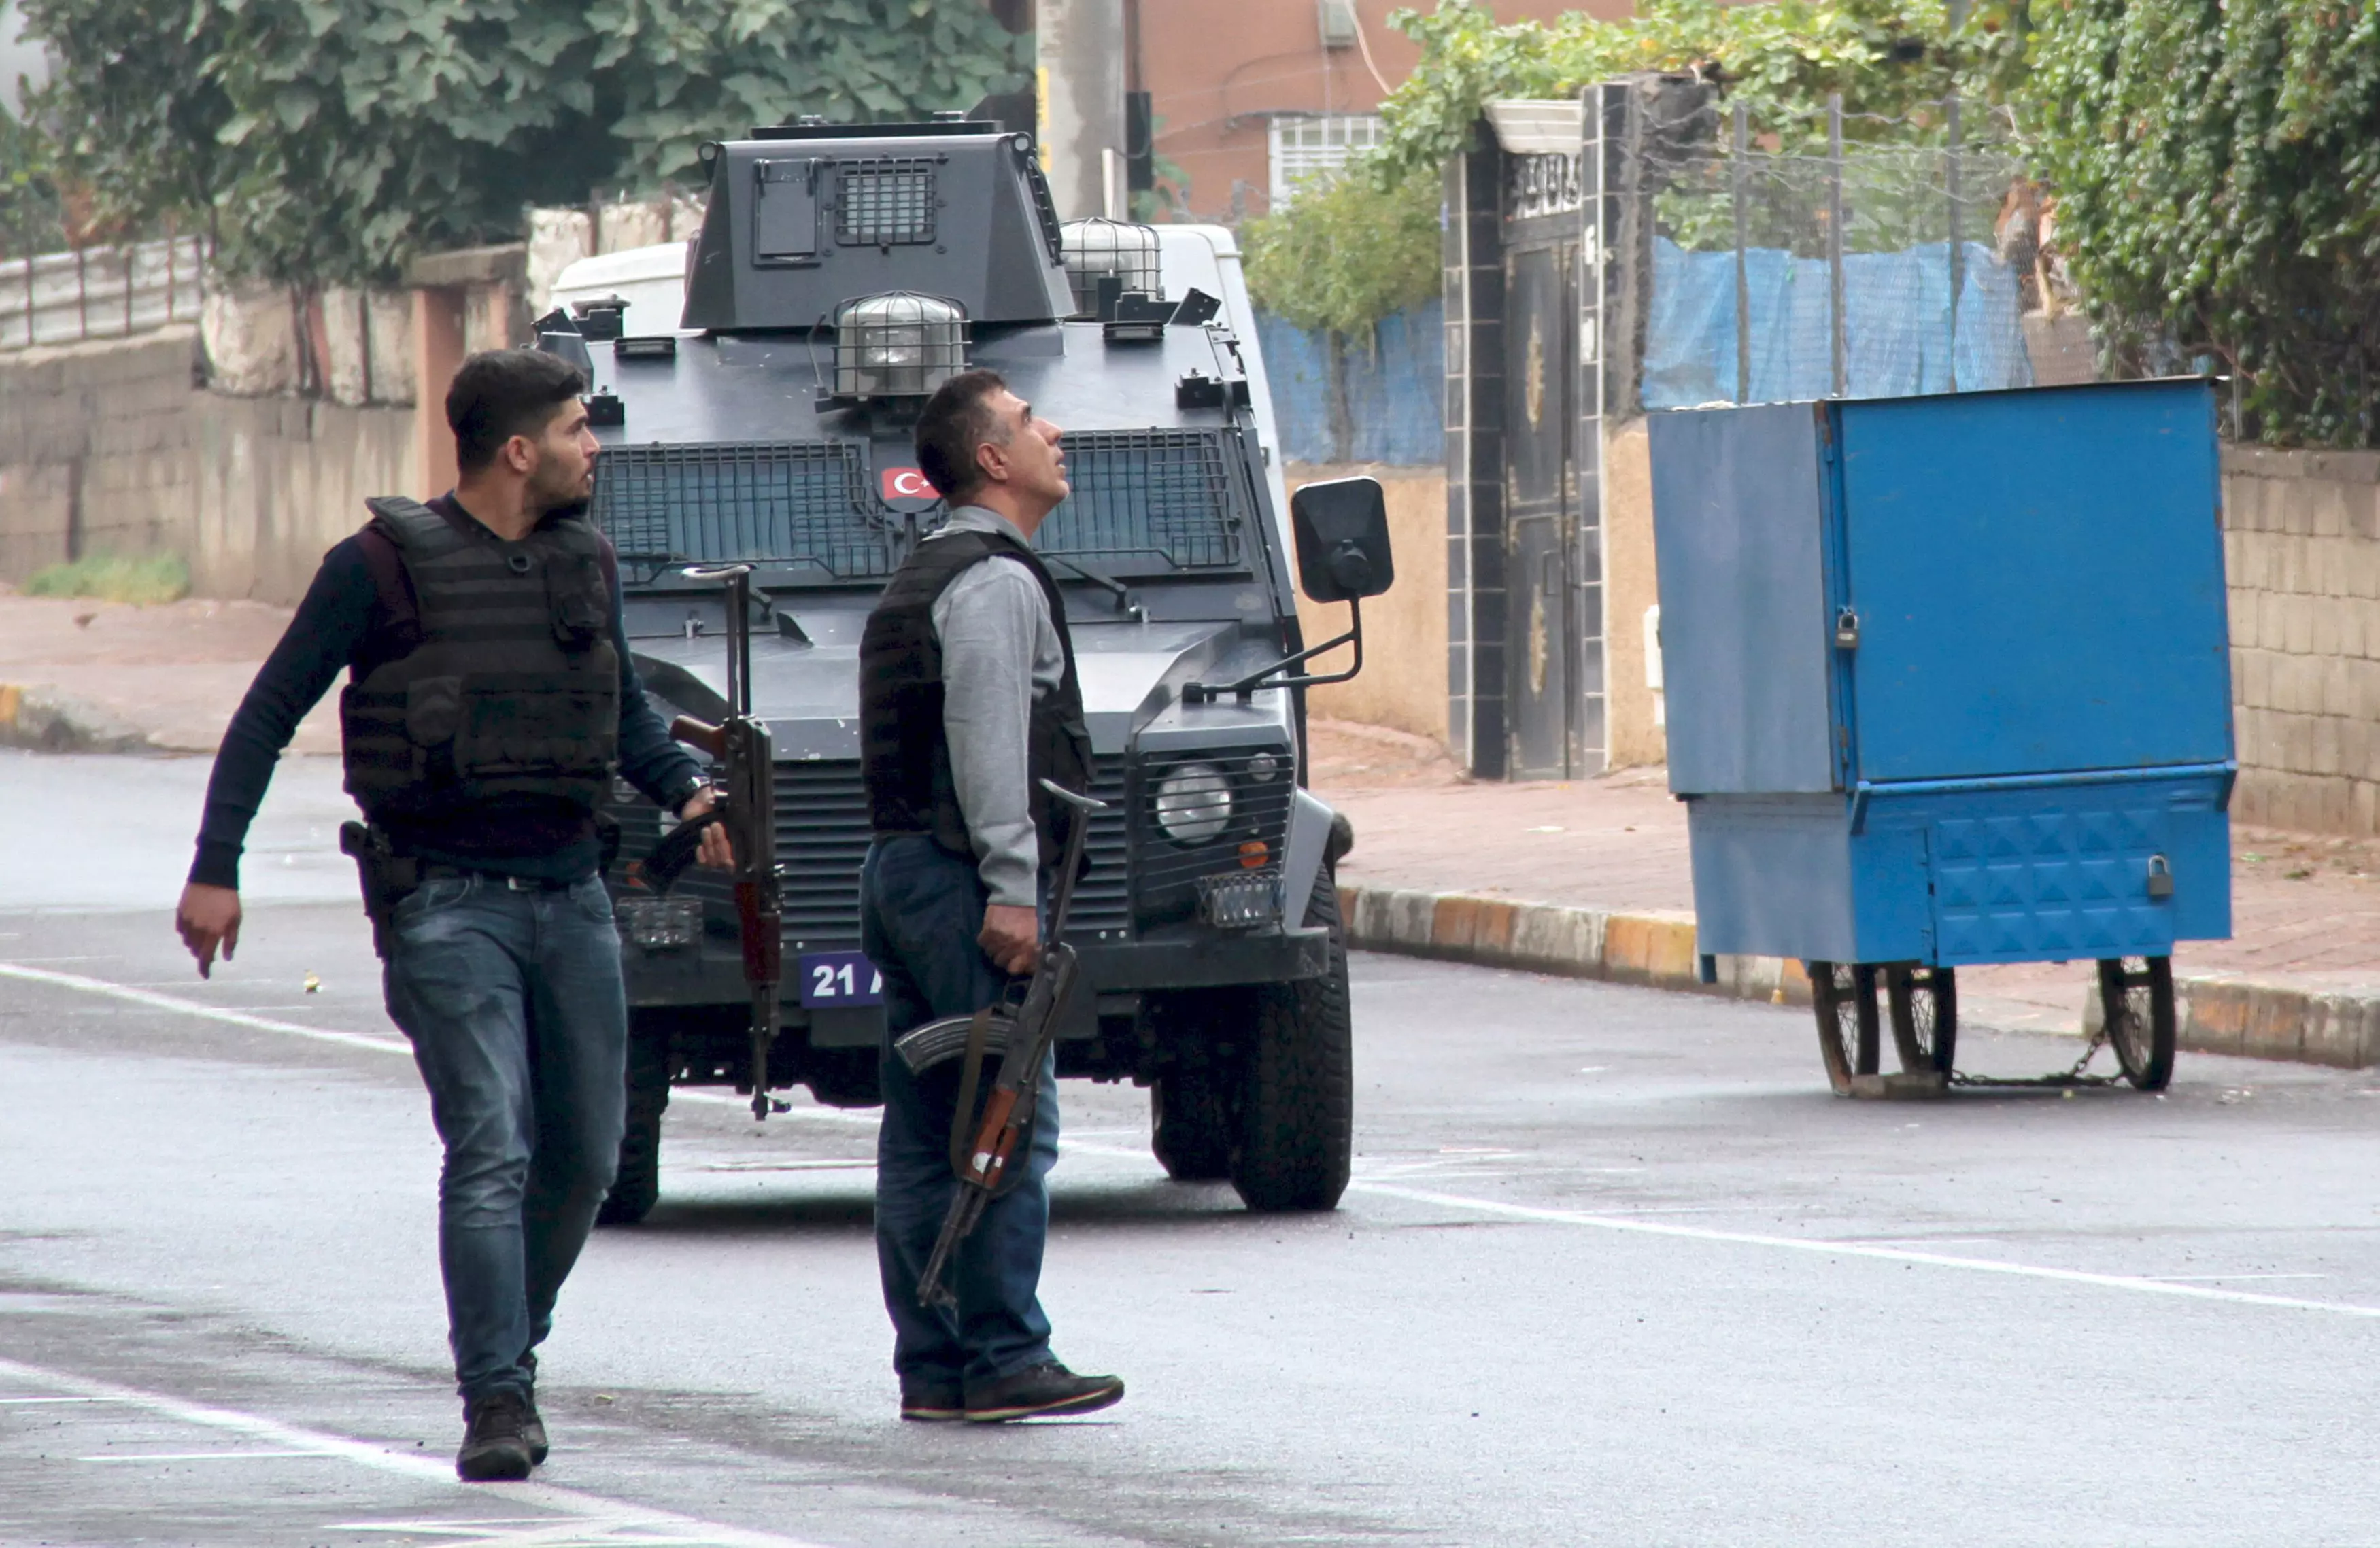 חילופי אש בין כוחות המשטרה ללוחמים כורדים, דיארבקיר